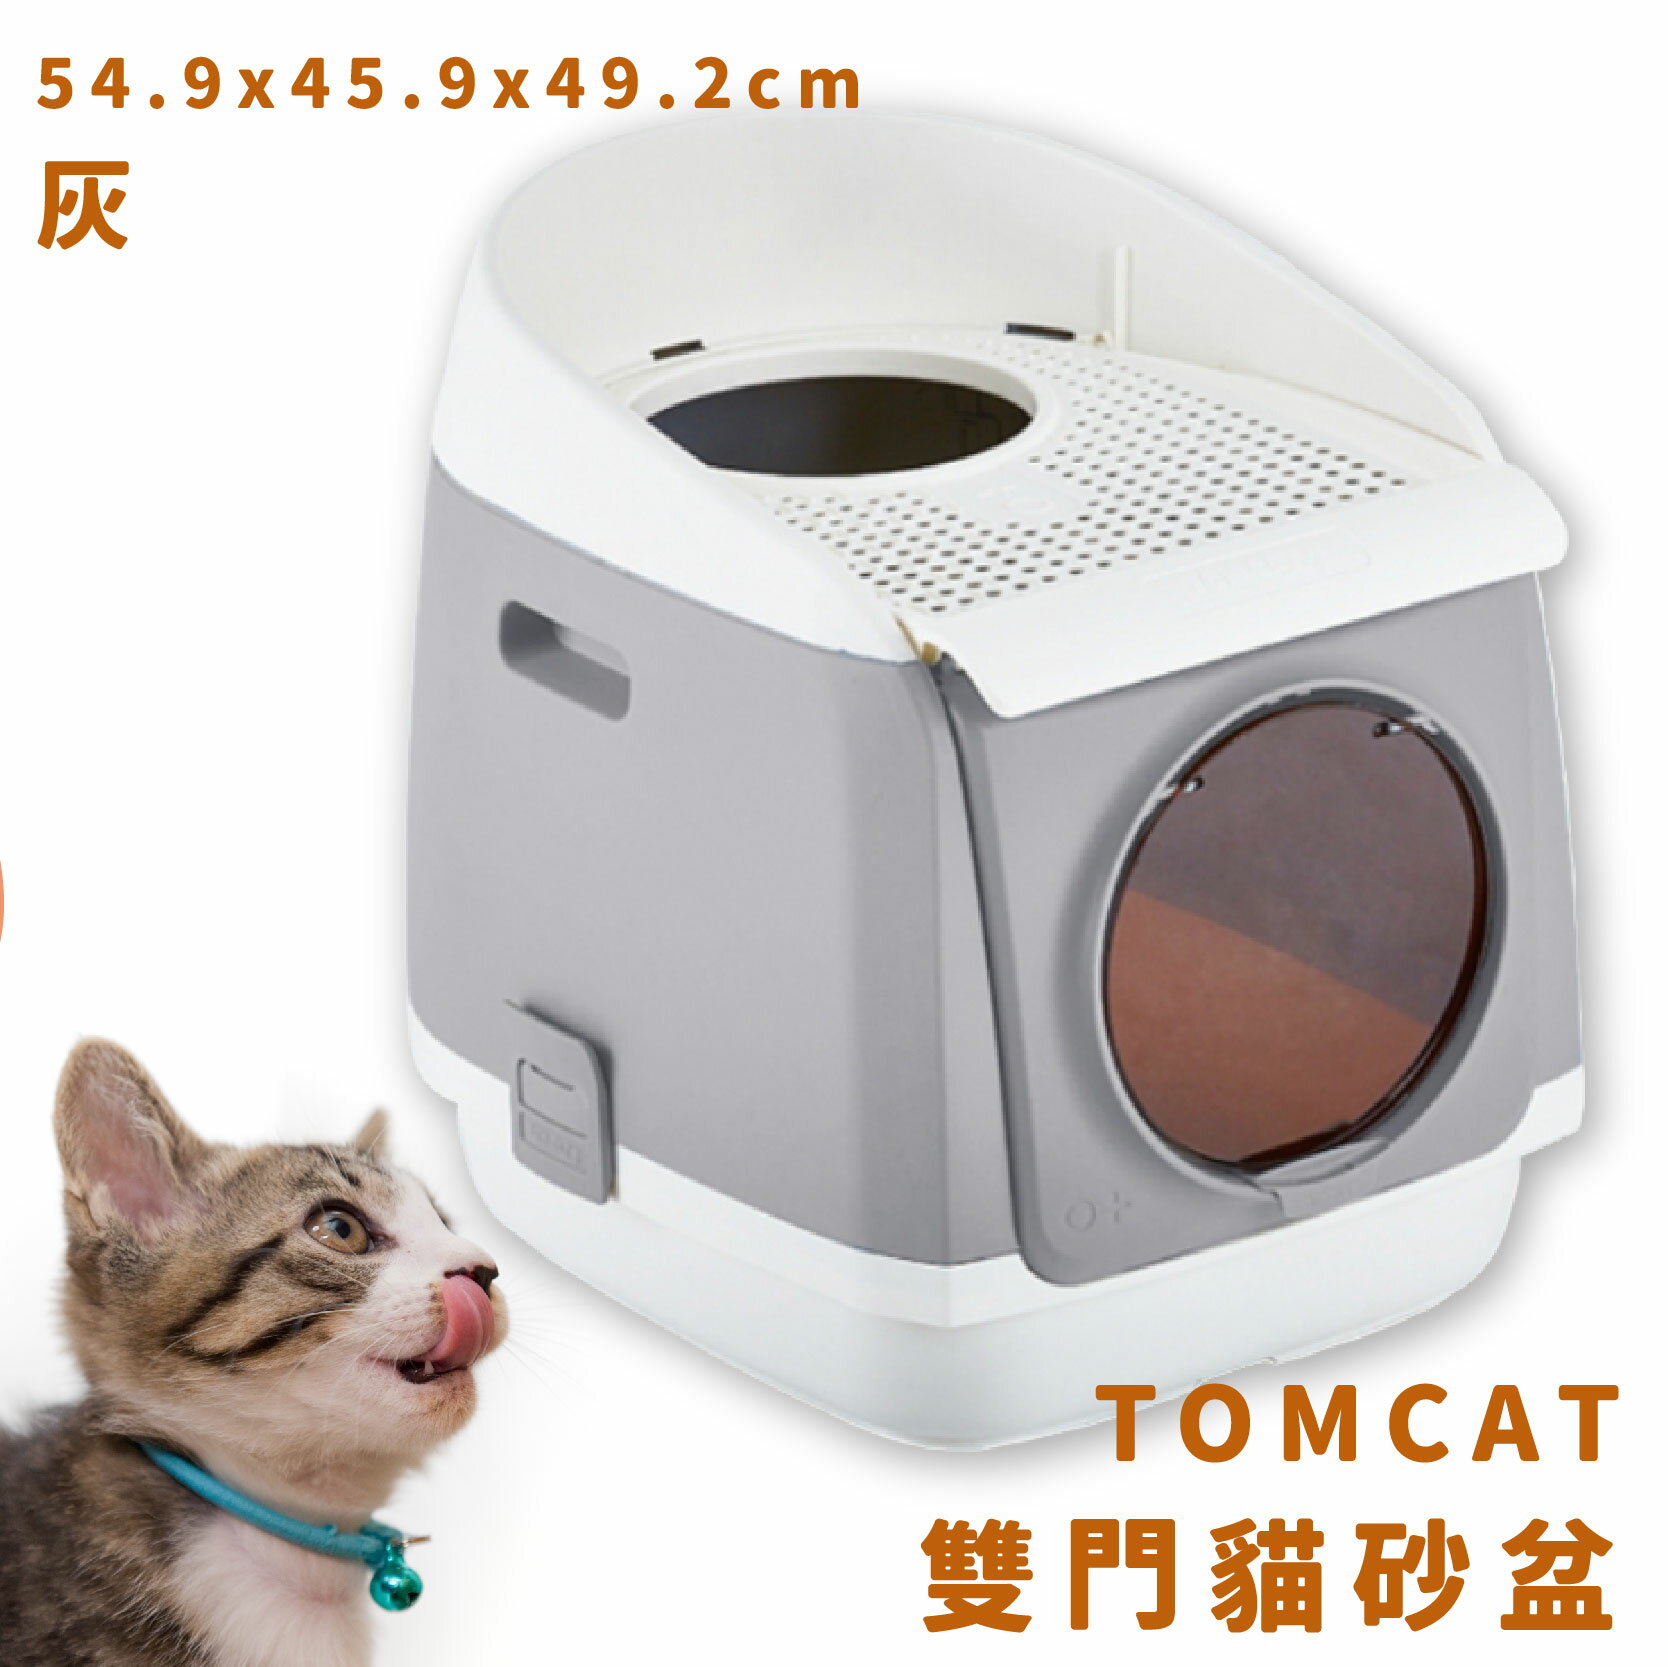 【現貨供應】TOMCAT 雙門貓砂盆 灰 雙門設計 落沙踏板 活性碳片 貓廁所 貓用品 寵物用品 寵物精品 限時促銷